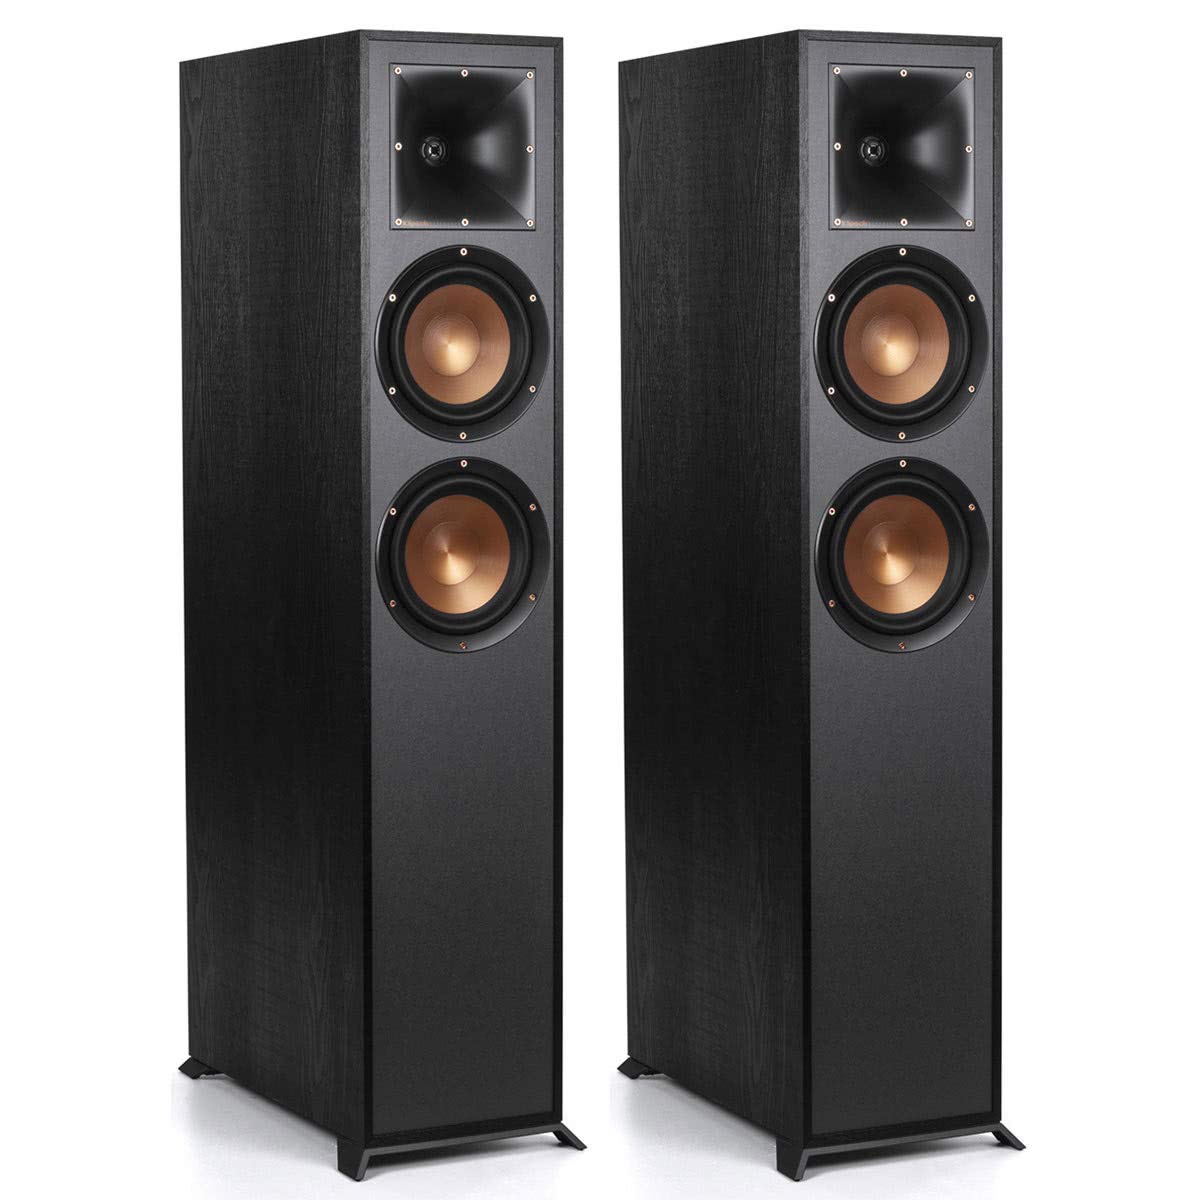 Klipsch Alto-falantes de chão R-625FA Dolby Atmos - Par (preto)